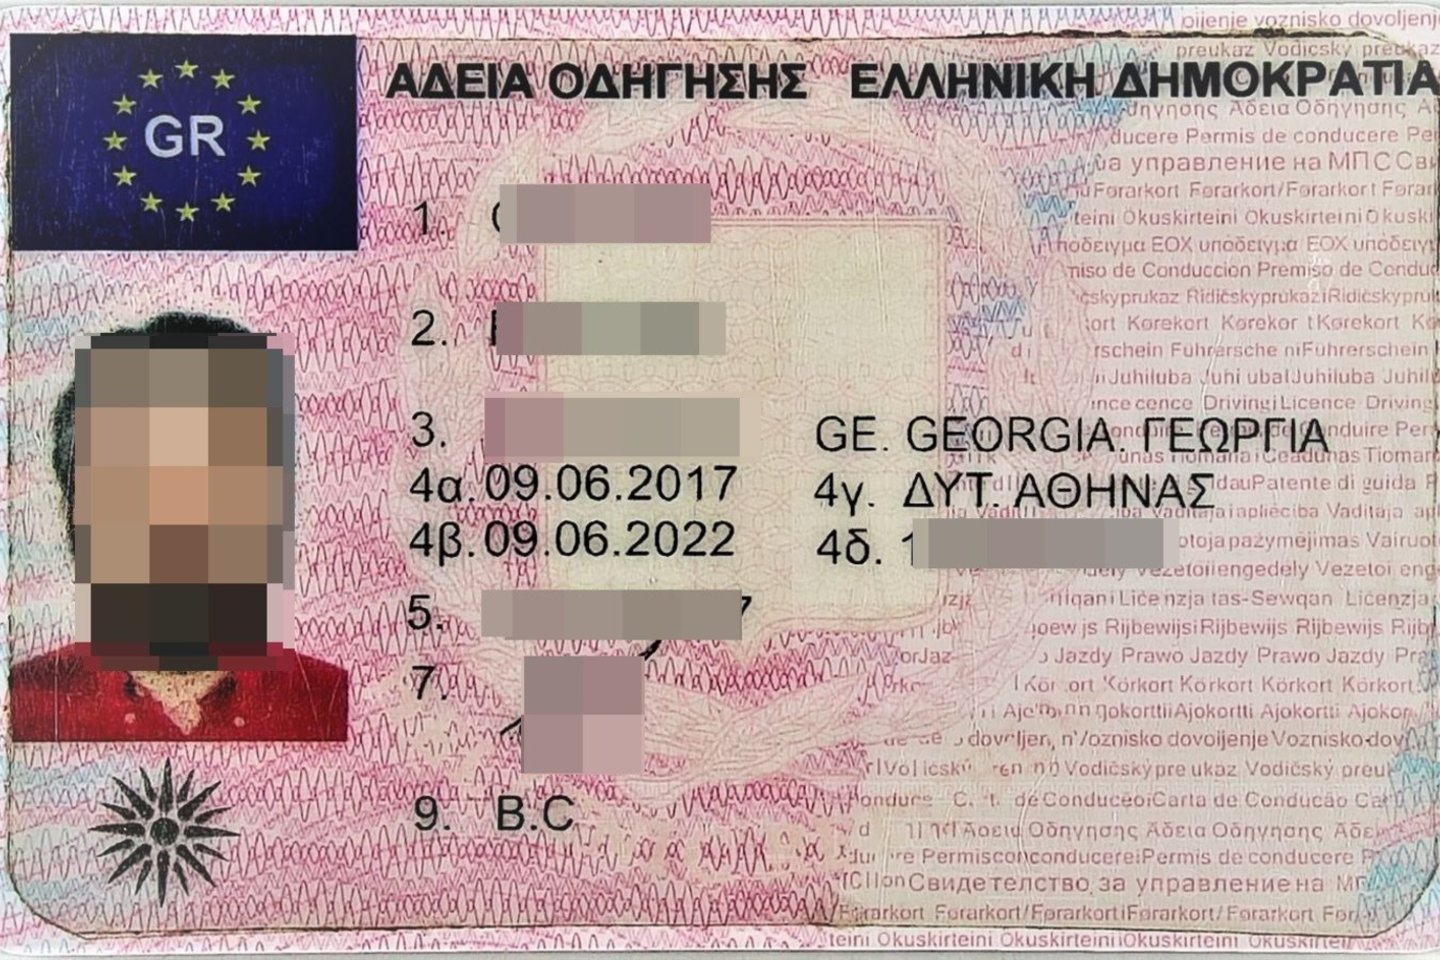  Gruzinas turėjo vairuotojo pažymėjimo klastotę.